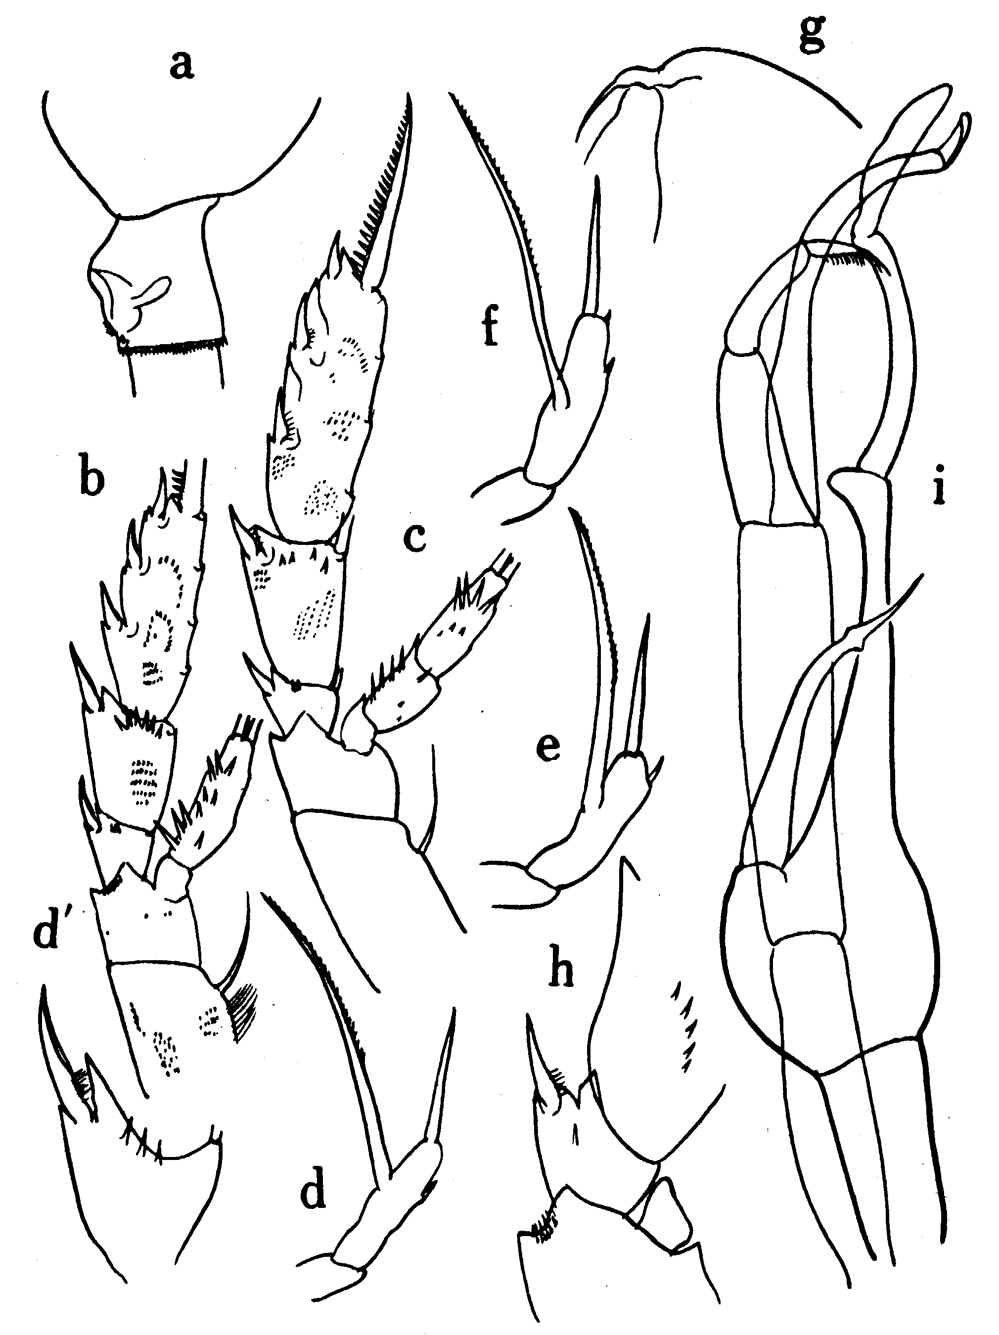 Espce Scaphocalanus major - Planche 6 de figures morphologiques